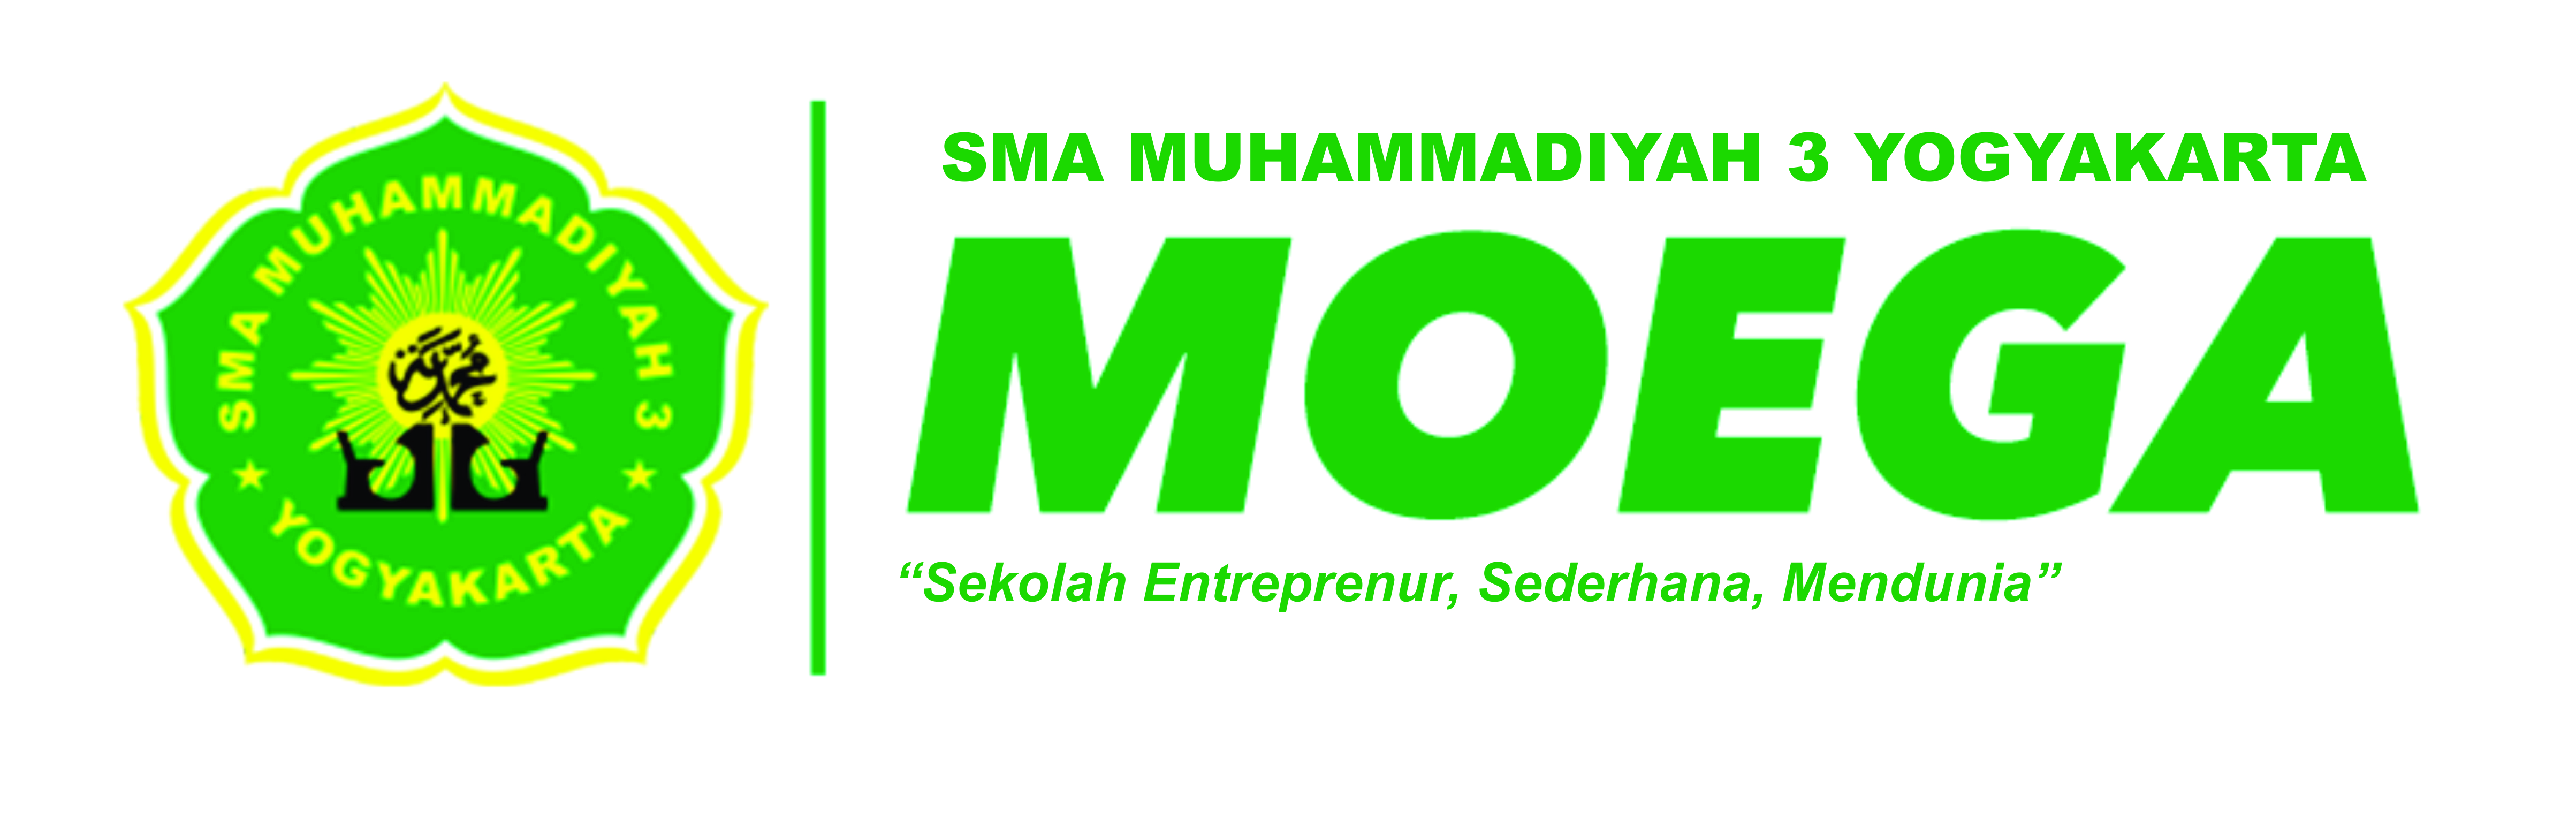 SMA Muhammadiyah 3 Yogyakarta